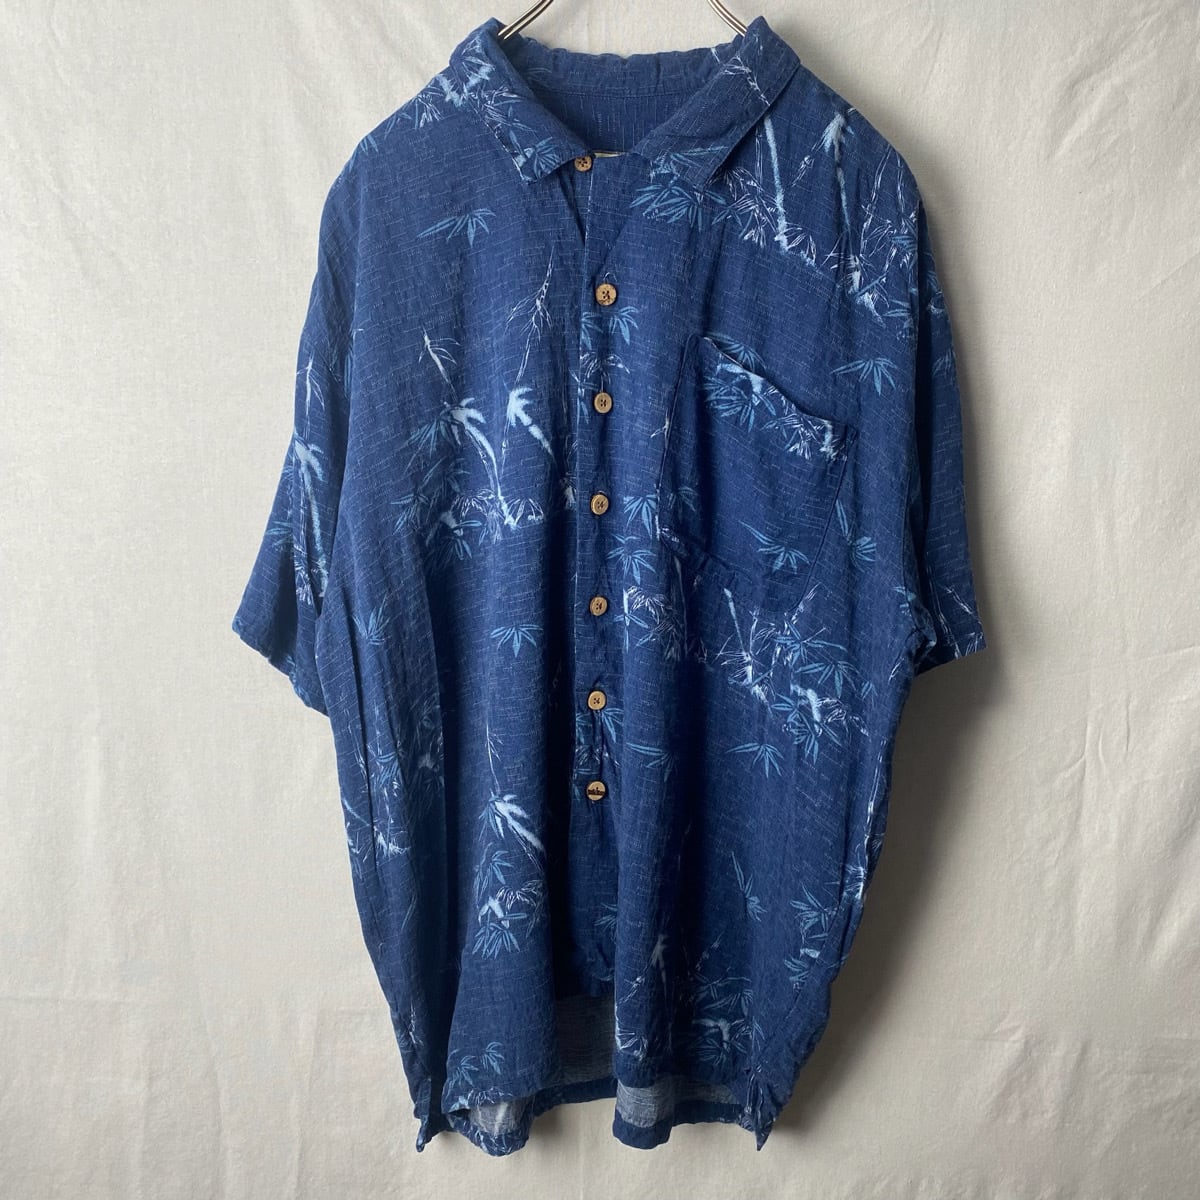 90s Tommy Bahama シルク アロハシャツ 半袖シャツ オープンカラー